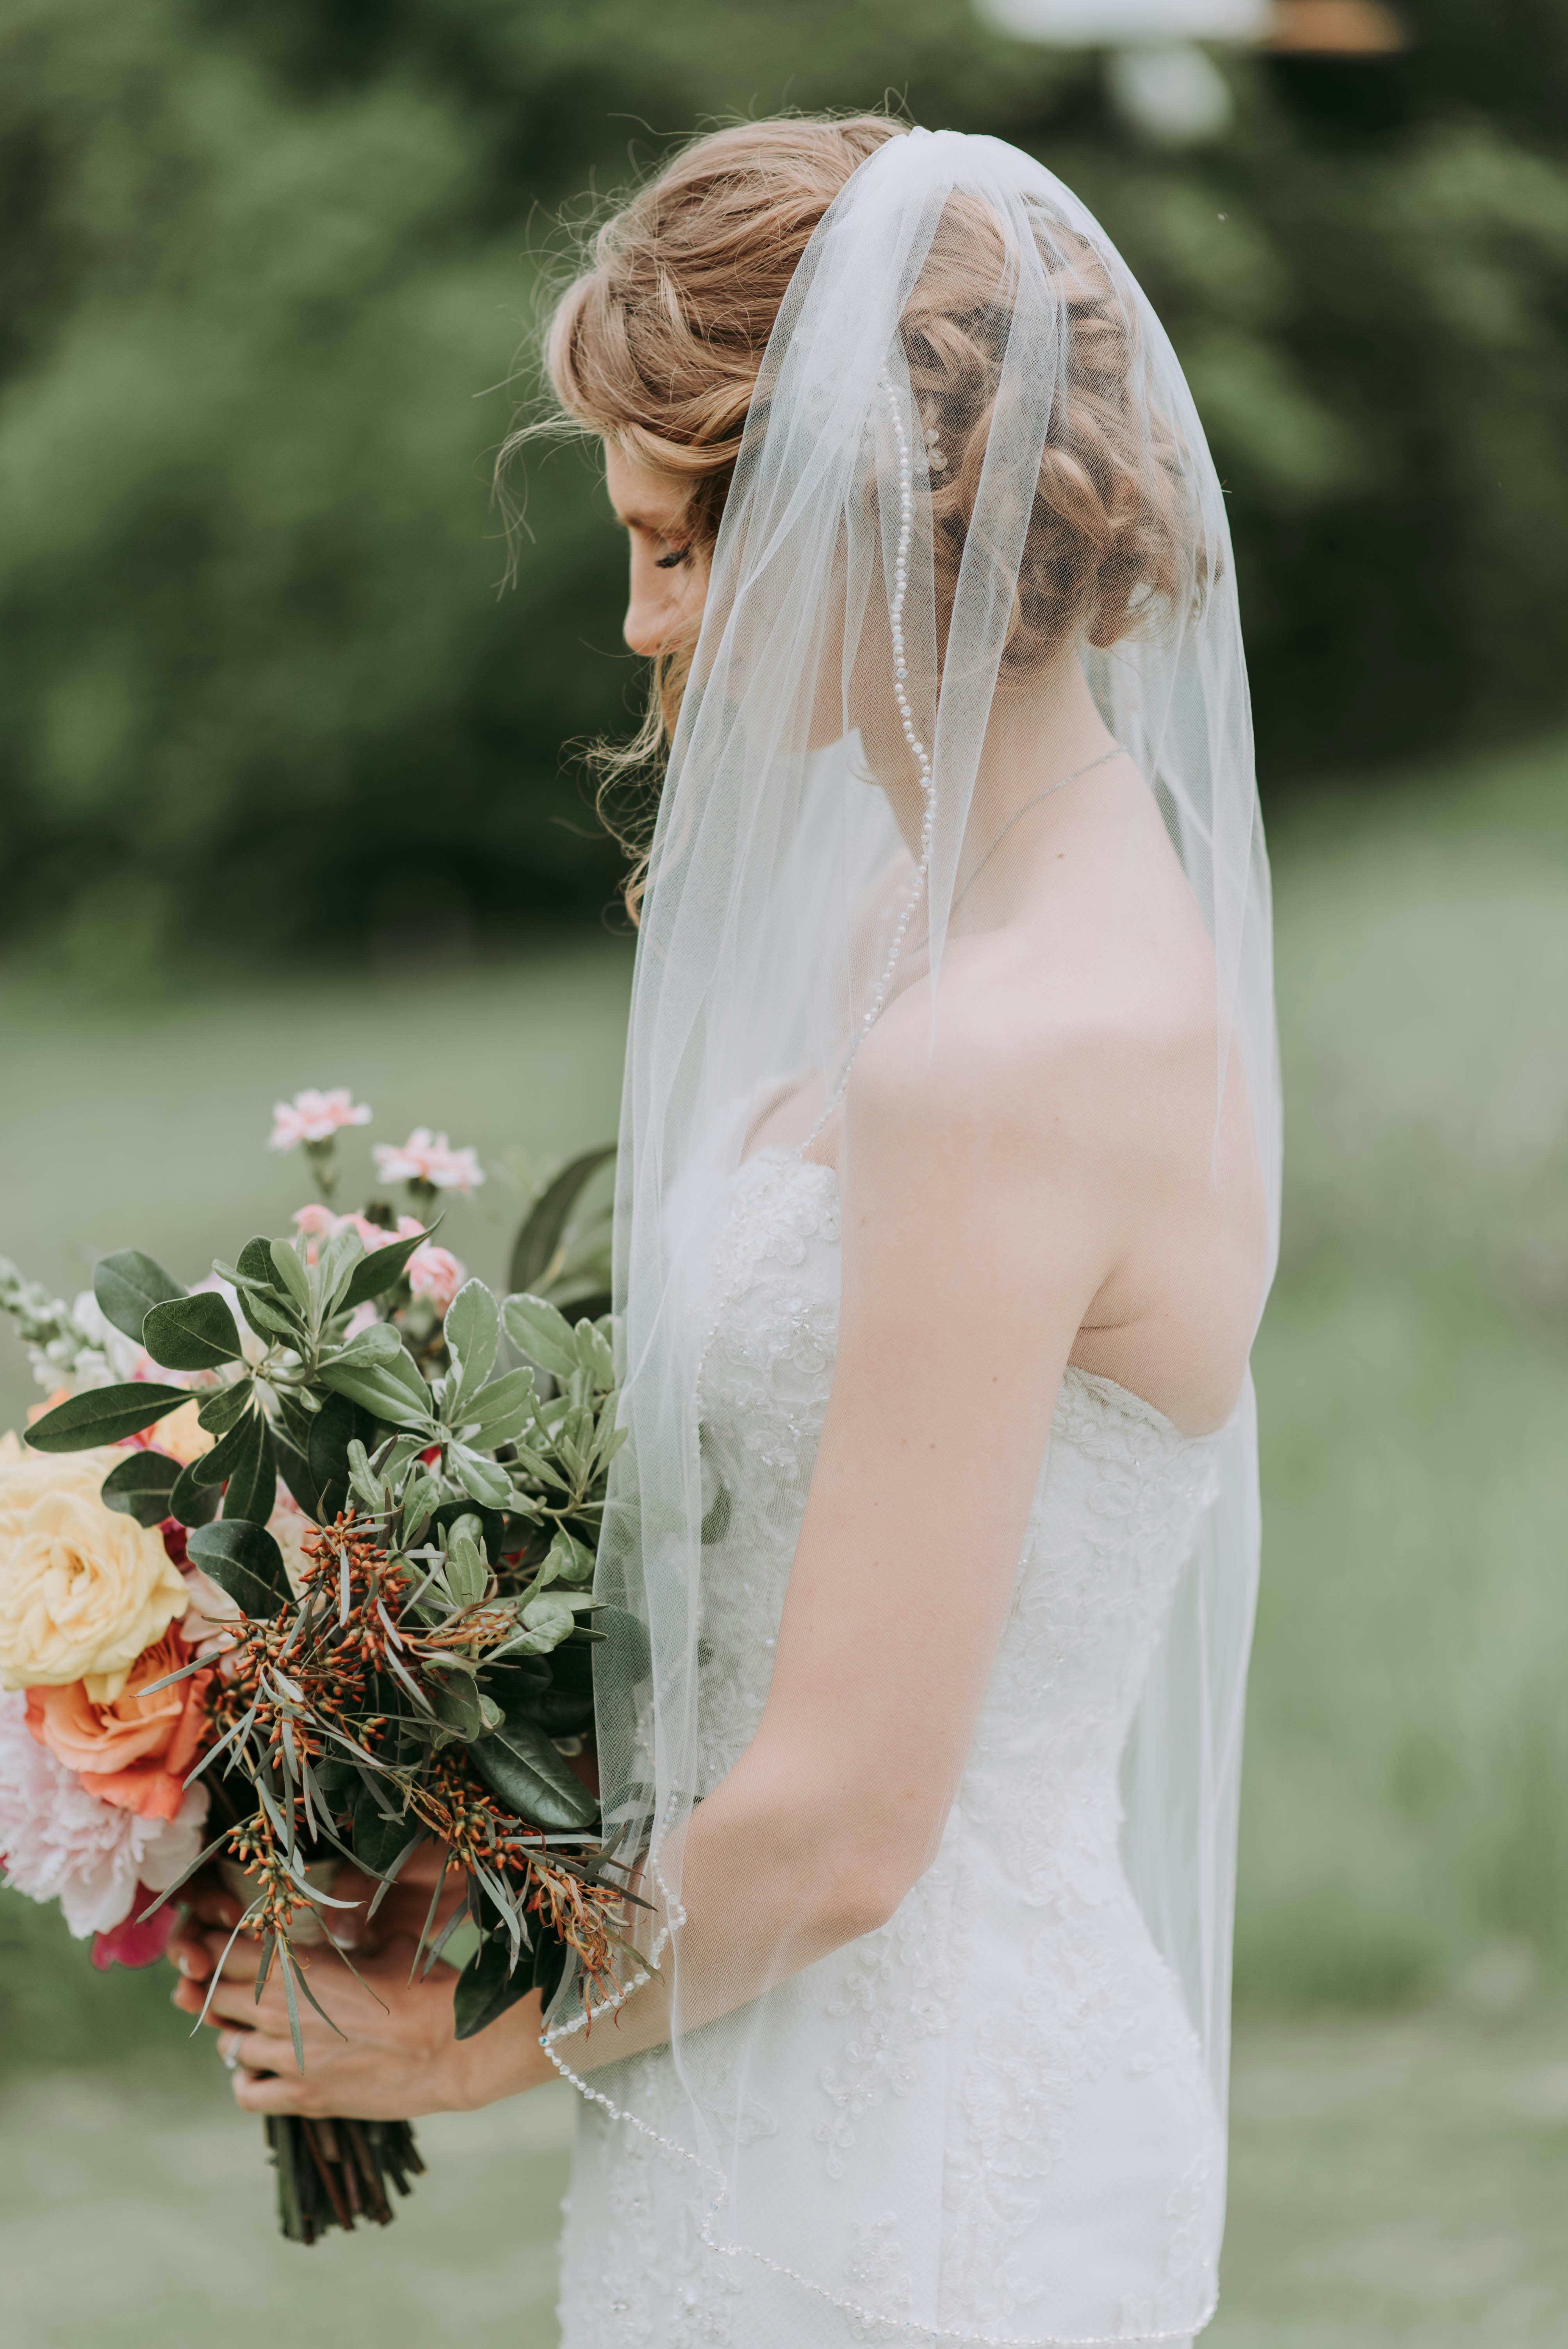 A sad bride holding a bouquet of flowers | Source: Unsplash